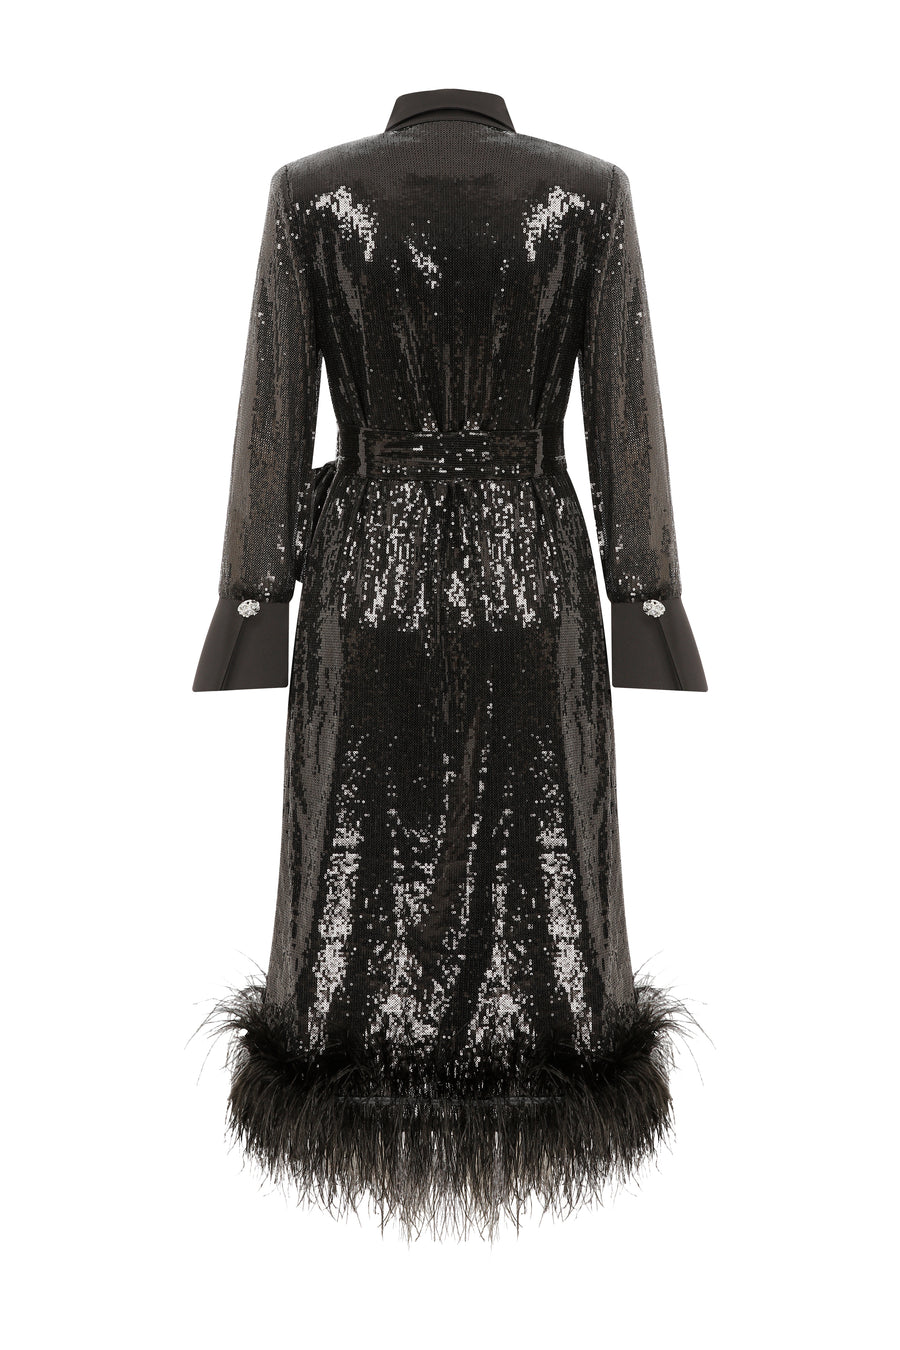 Dyla Black Sequin Dress